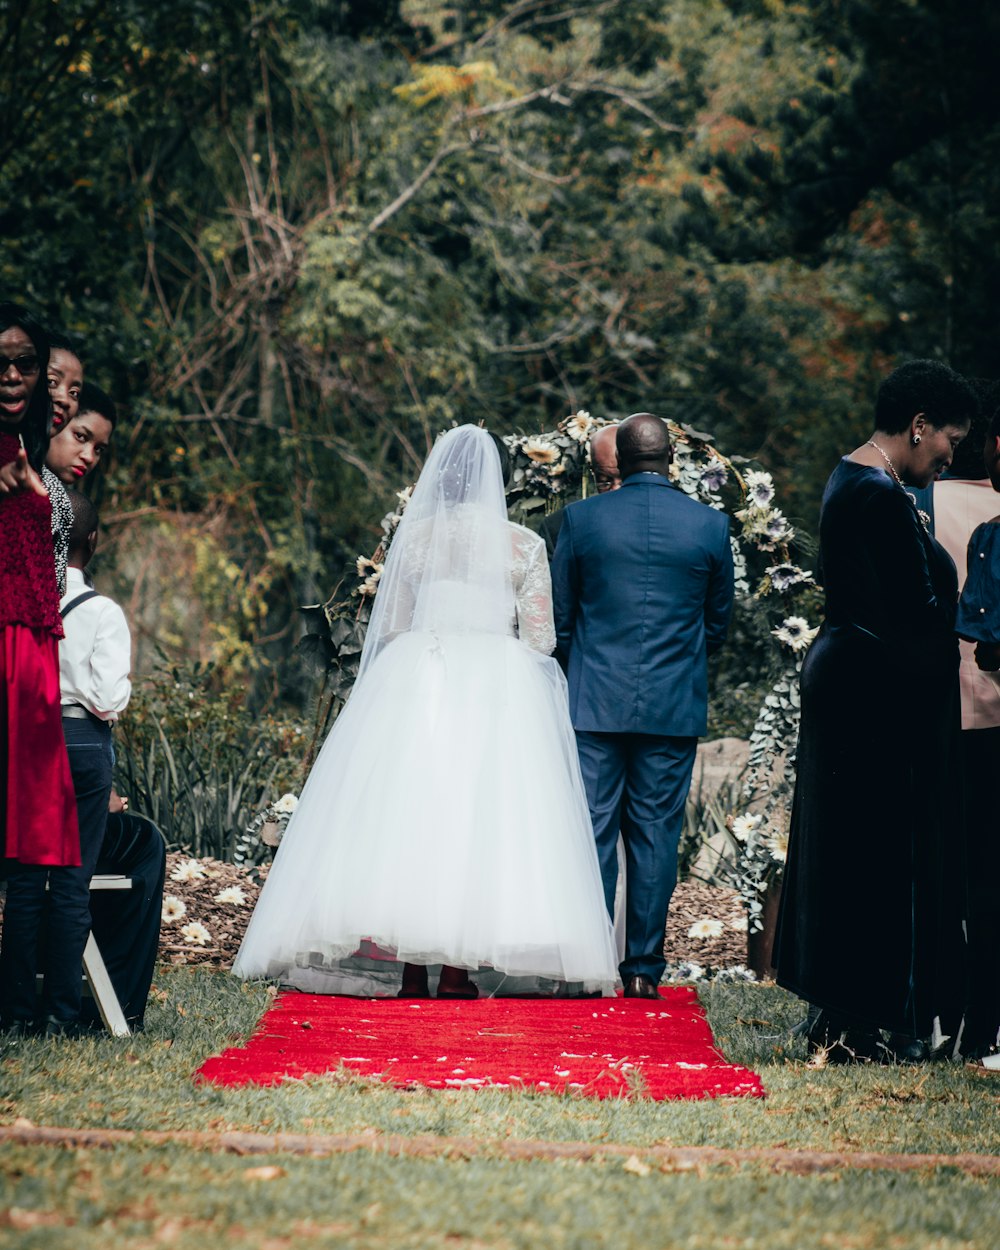 Braut und Bräutigam stehen tagsüber auf roten Textilien, umgeben von Bäumen